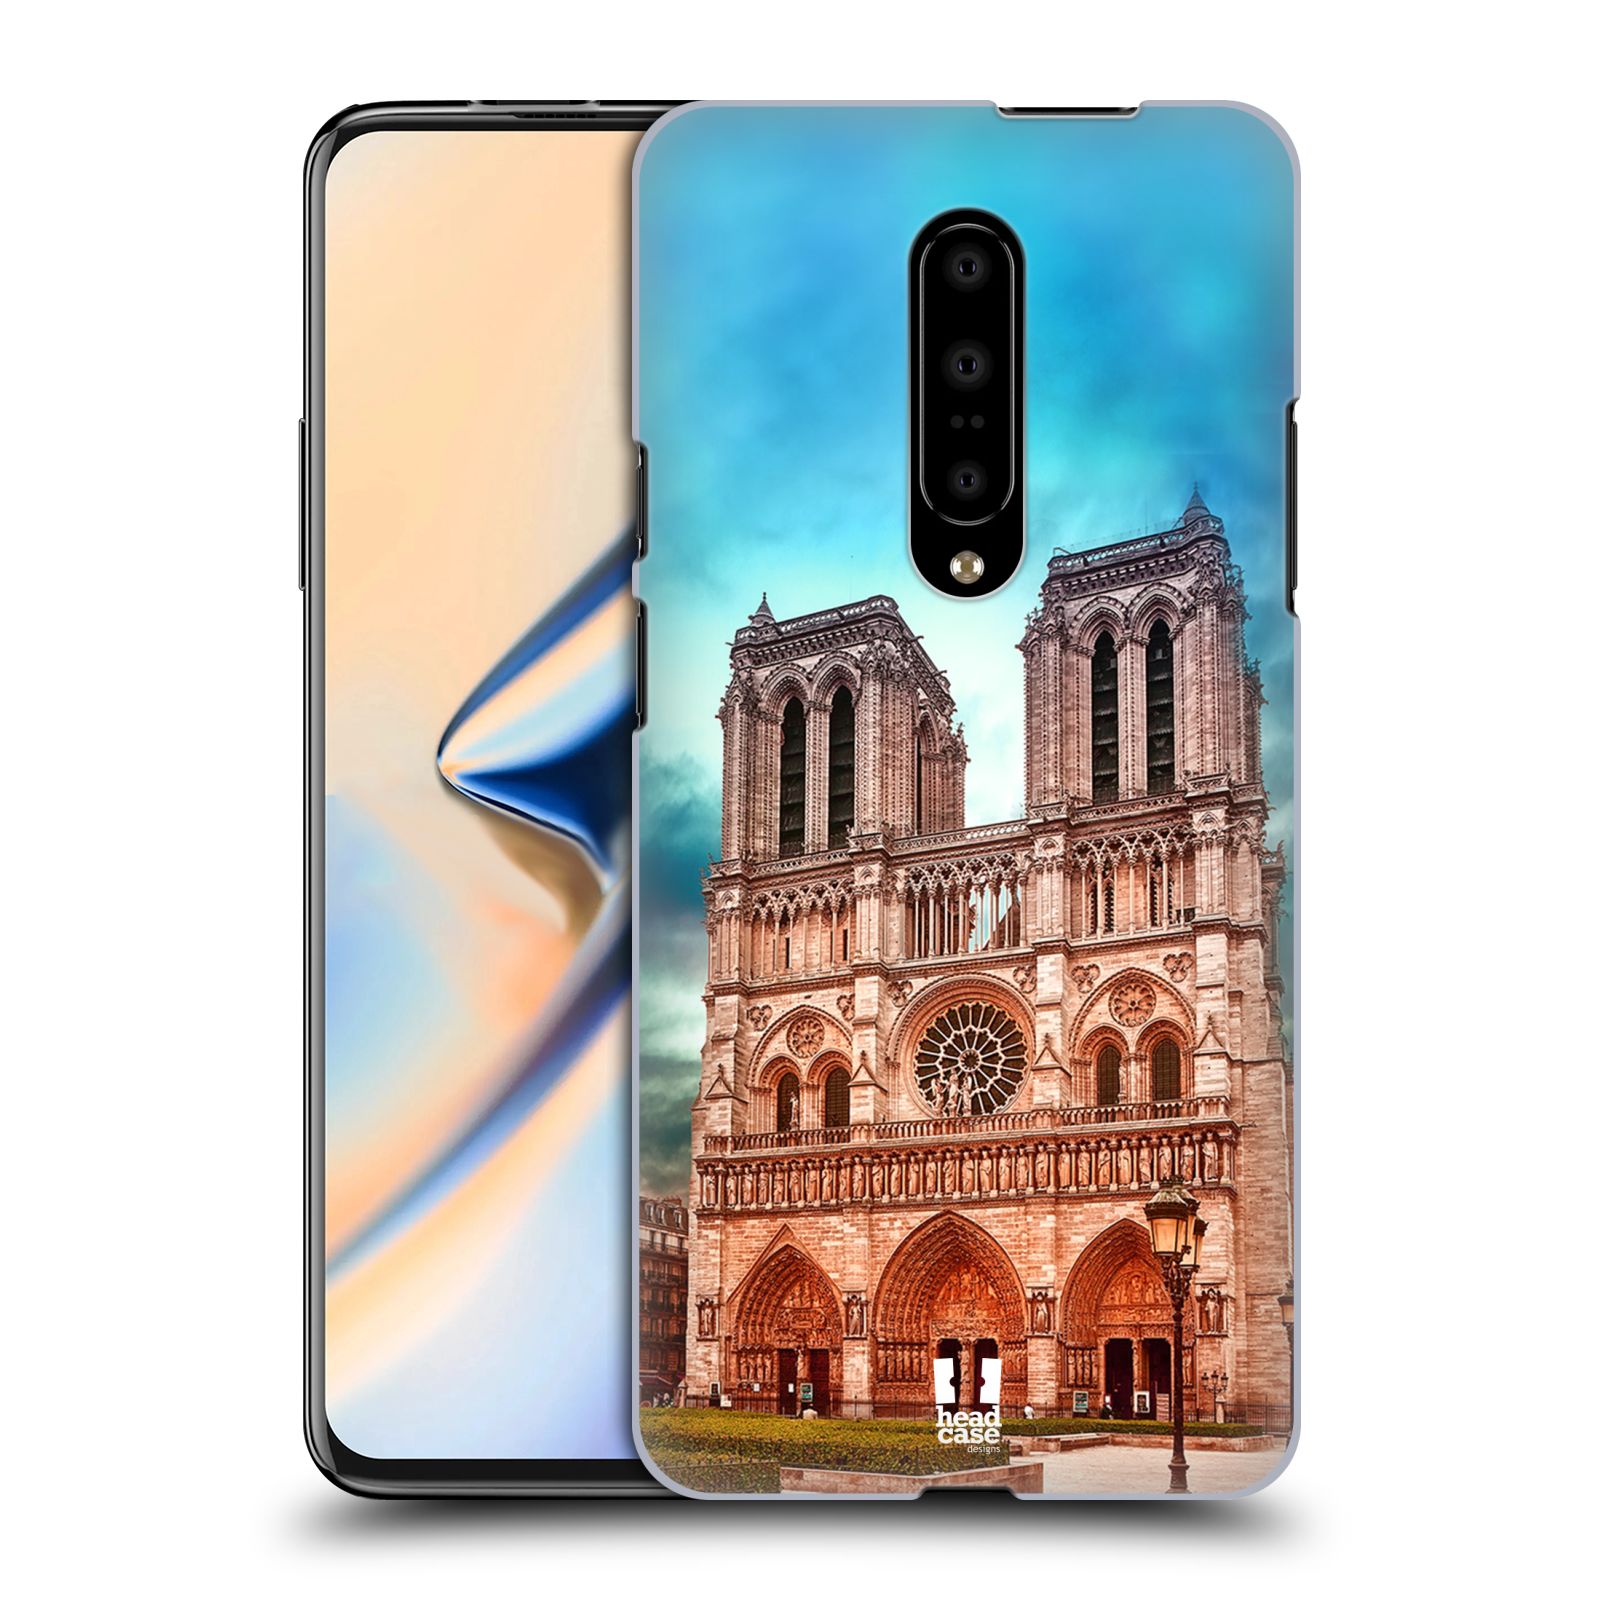 Pouzdro na mobil OnePlus 7 - HEAD CASE - historická místa katedrála Notre Dame